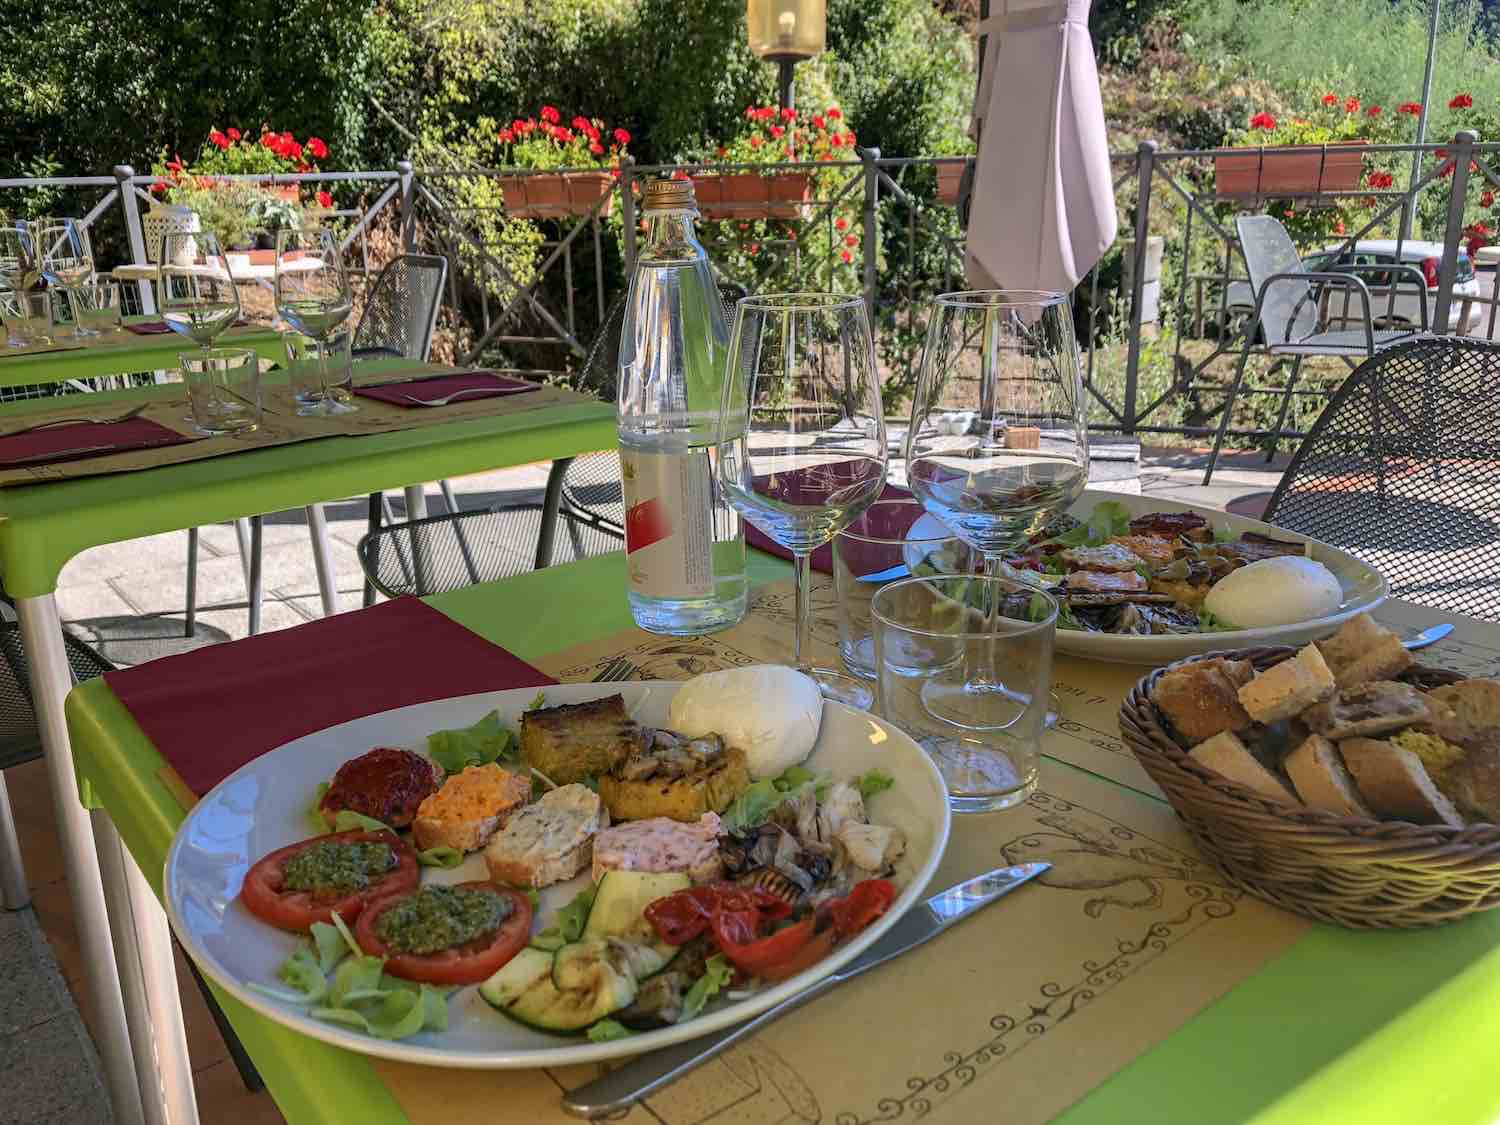 L' Osteria I Macelli si trova a Borgo a Mozzano (LU). Dal 2017 ha cambiato gestione e si dirige a grandi passi verso una cucina tipica, a chilometri zero e molto ricercata.